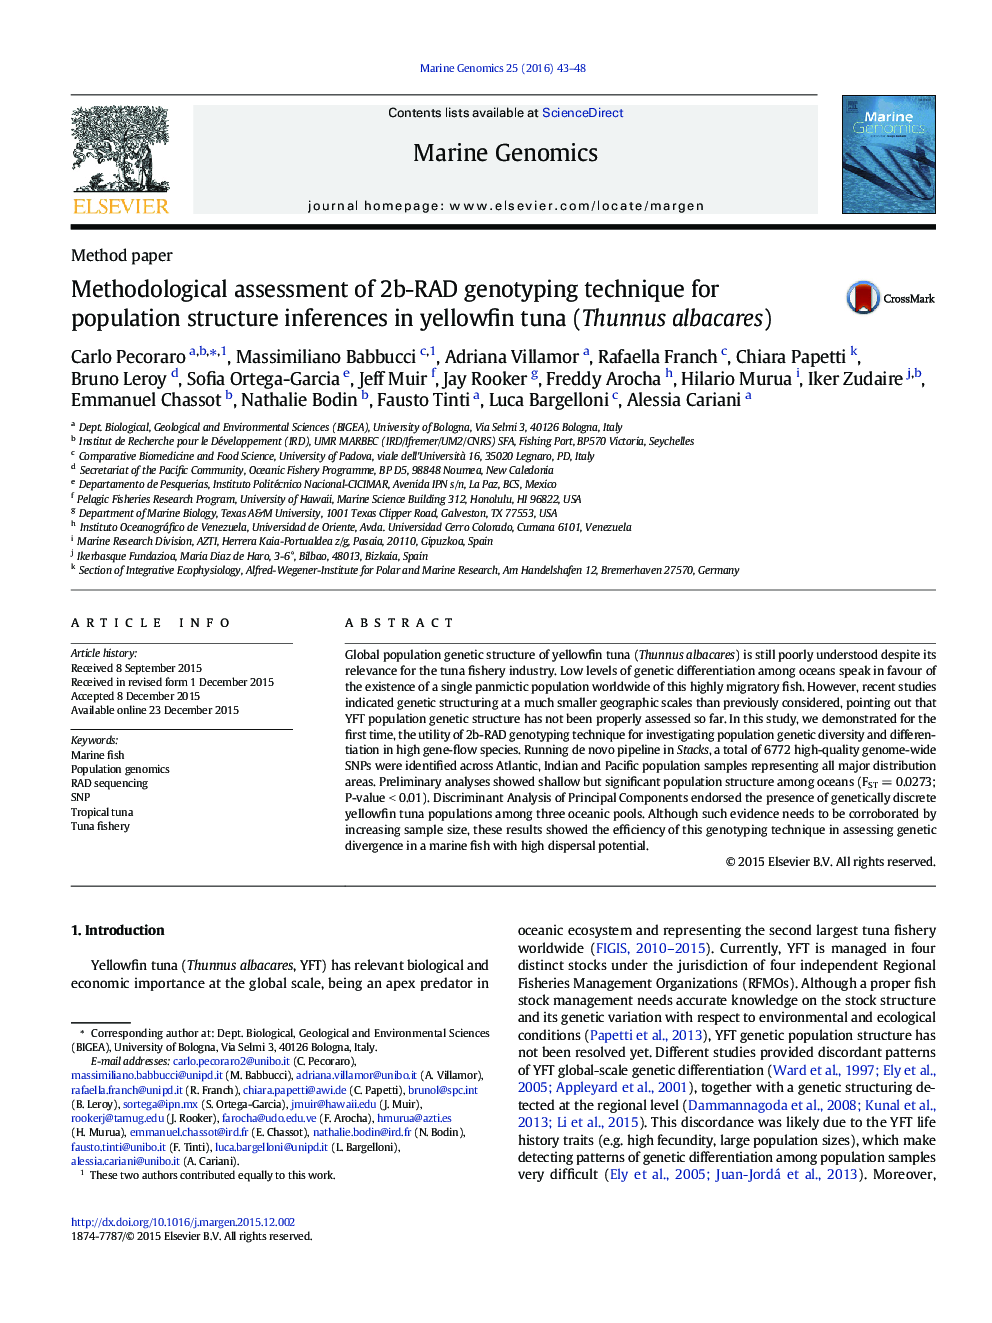 ارزیابی روش شناختی از روش ژنوتیپ 2B-RAD برای استنباط ساختار جمعیت در ماهی تن زرد (گیدر یا تون زردباله)